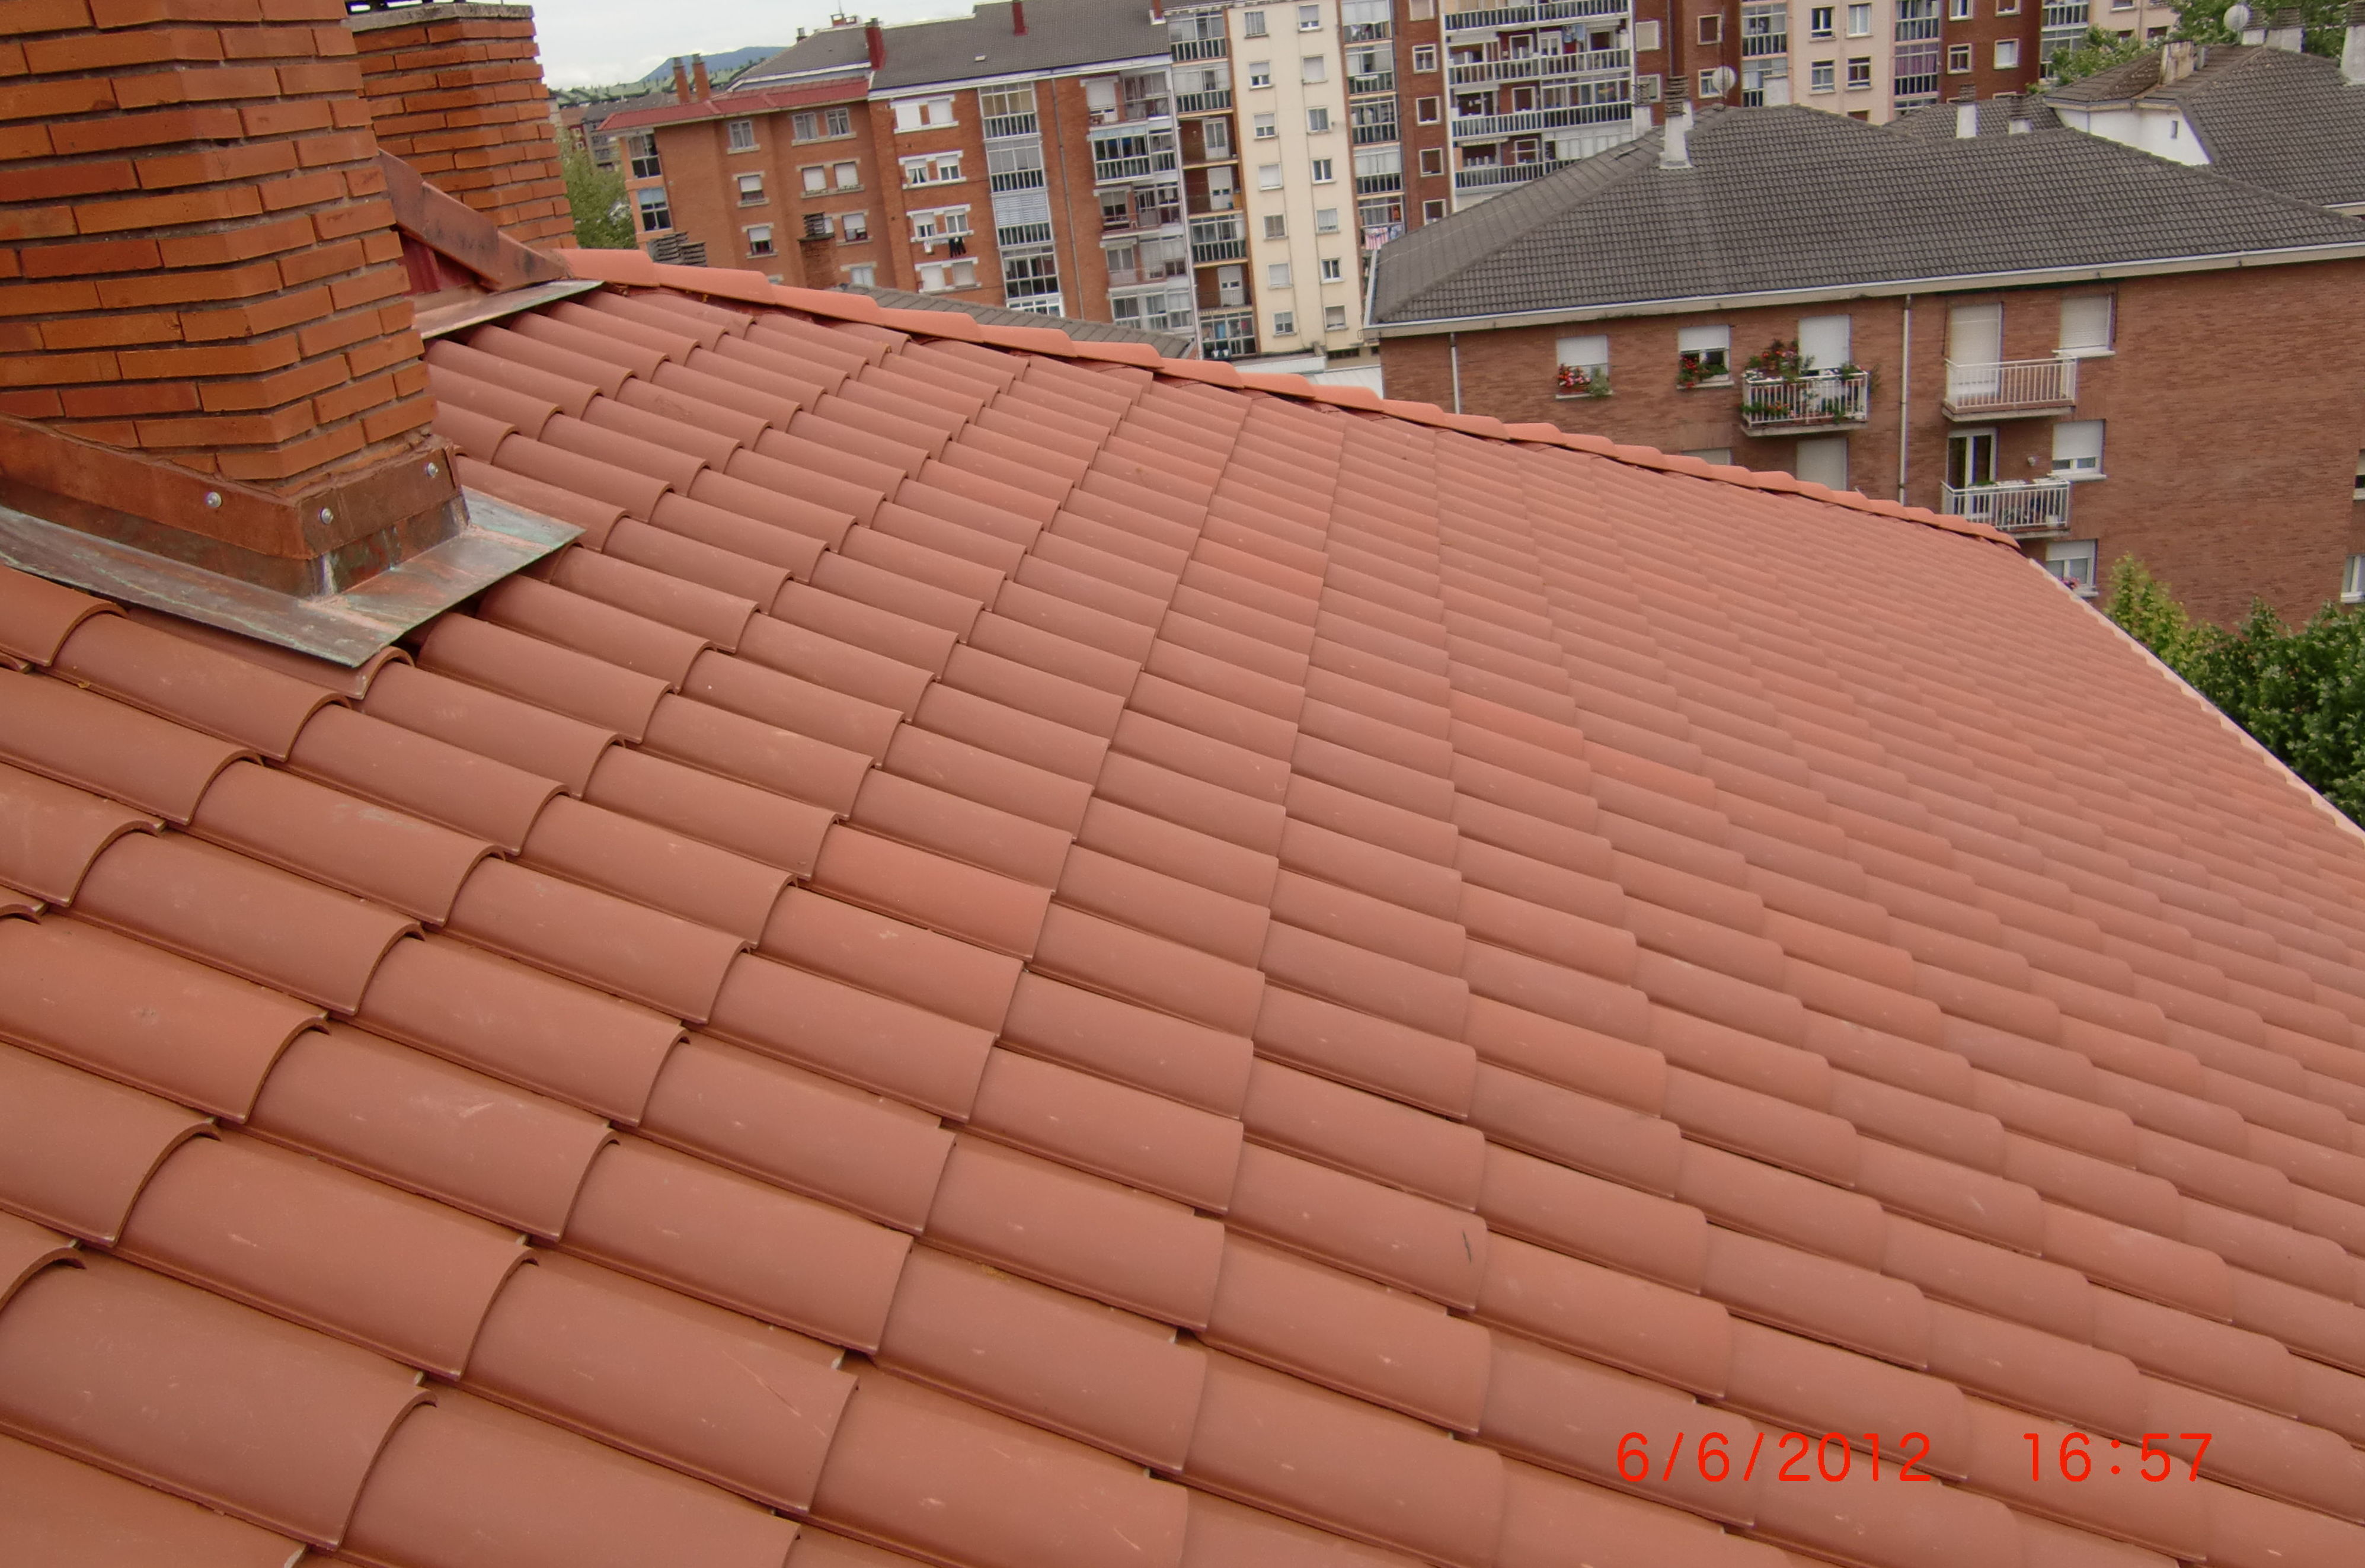 Rehabilitación de tejado en la calle Bernal de Luko, 9 Vitoria-Gasteiz